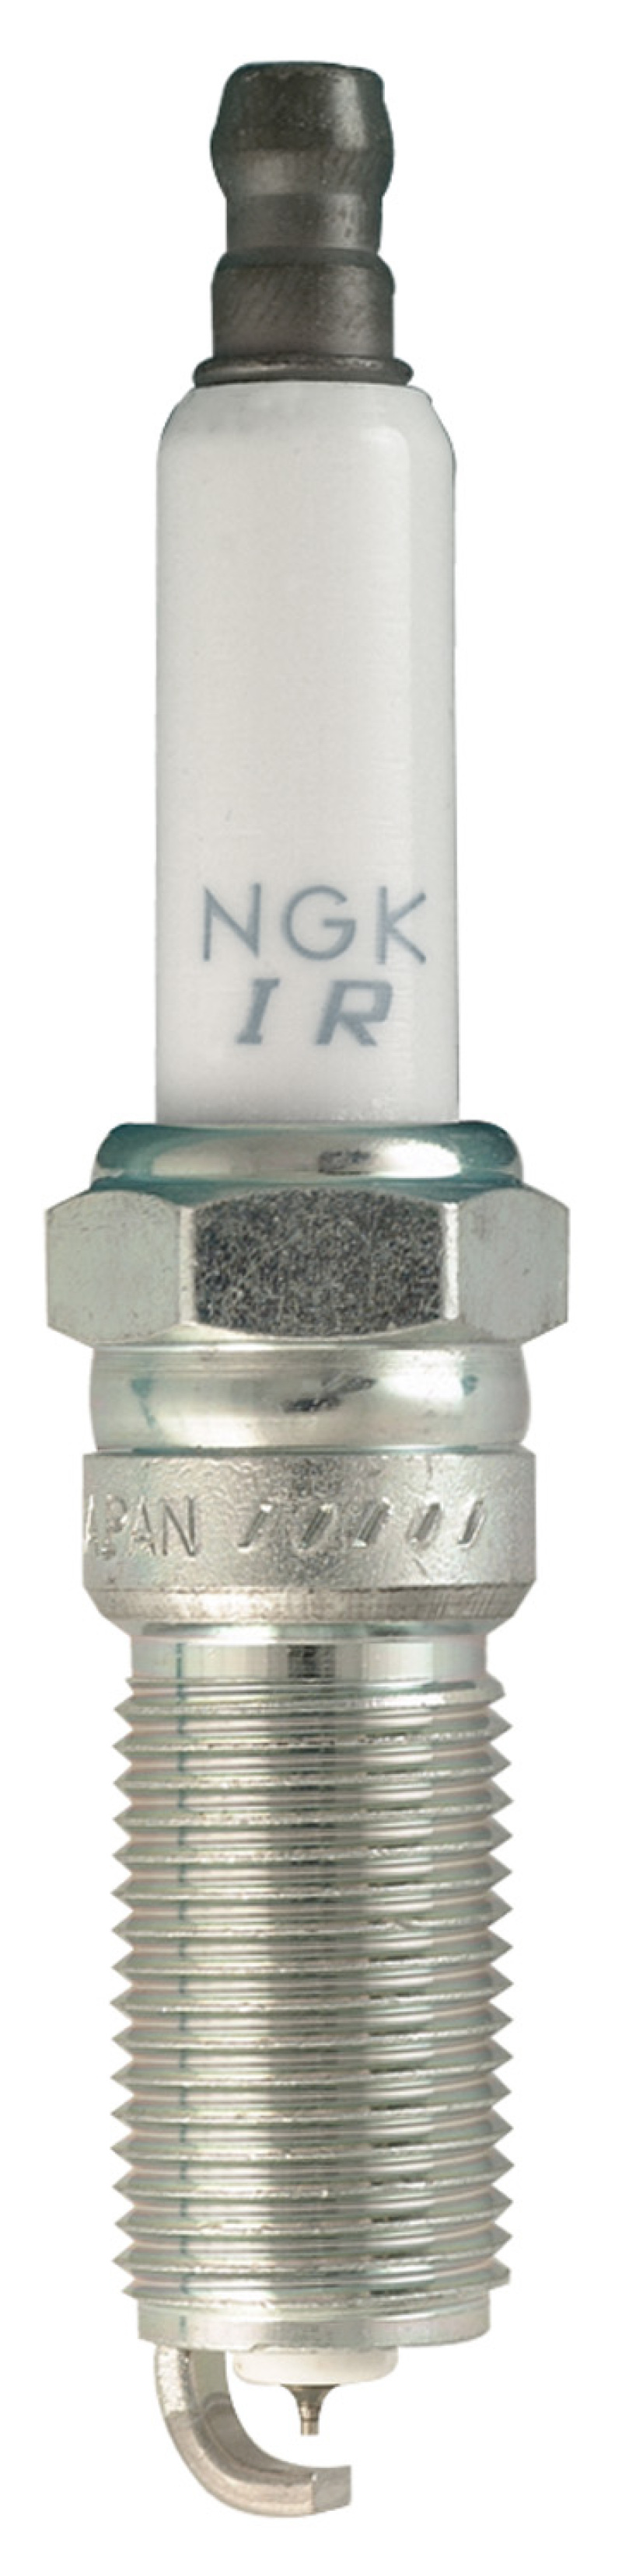 NGK Laser Iridium Spark Plug Box of 4 (ILTR5L11) - 96329